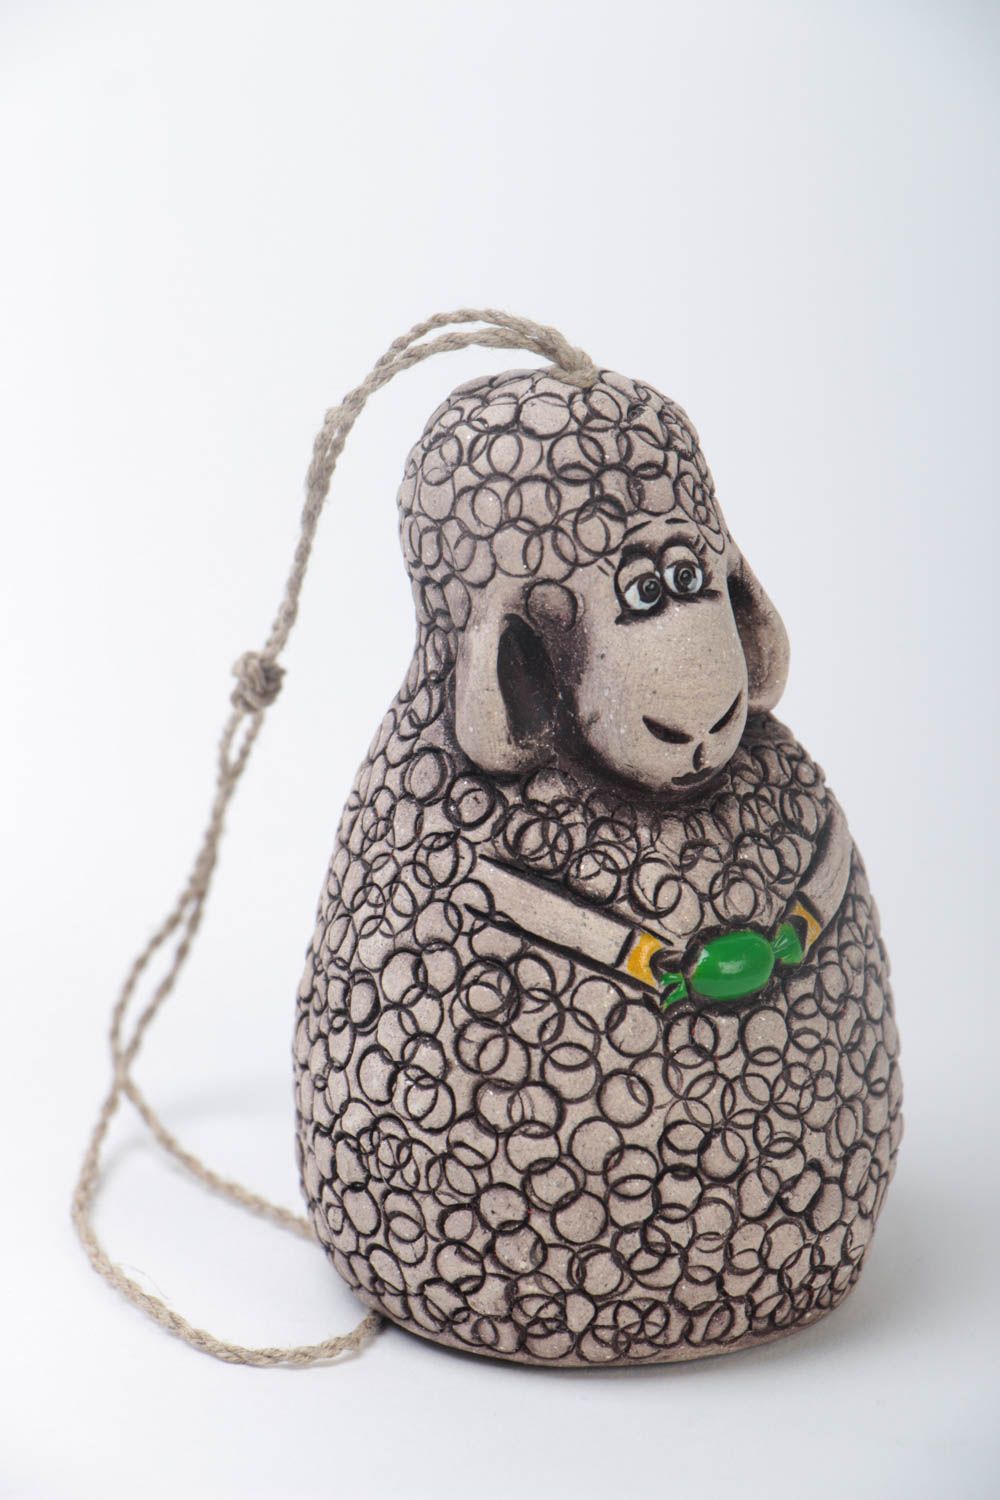 Deko Glöckchen aus Ton in Form von Schaf aus Keramik öko rein handmade bemalt foto 2